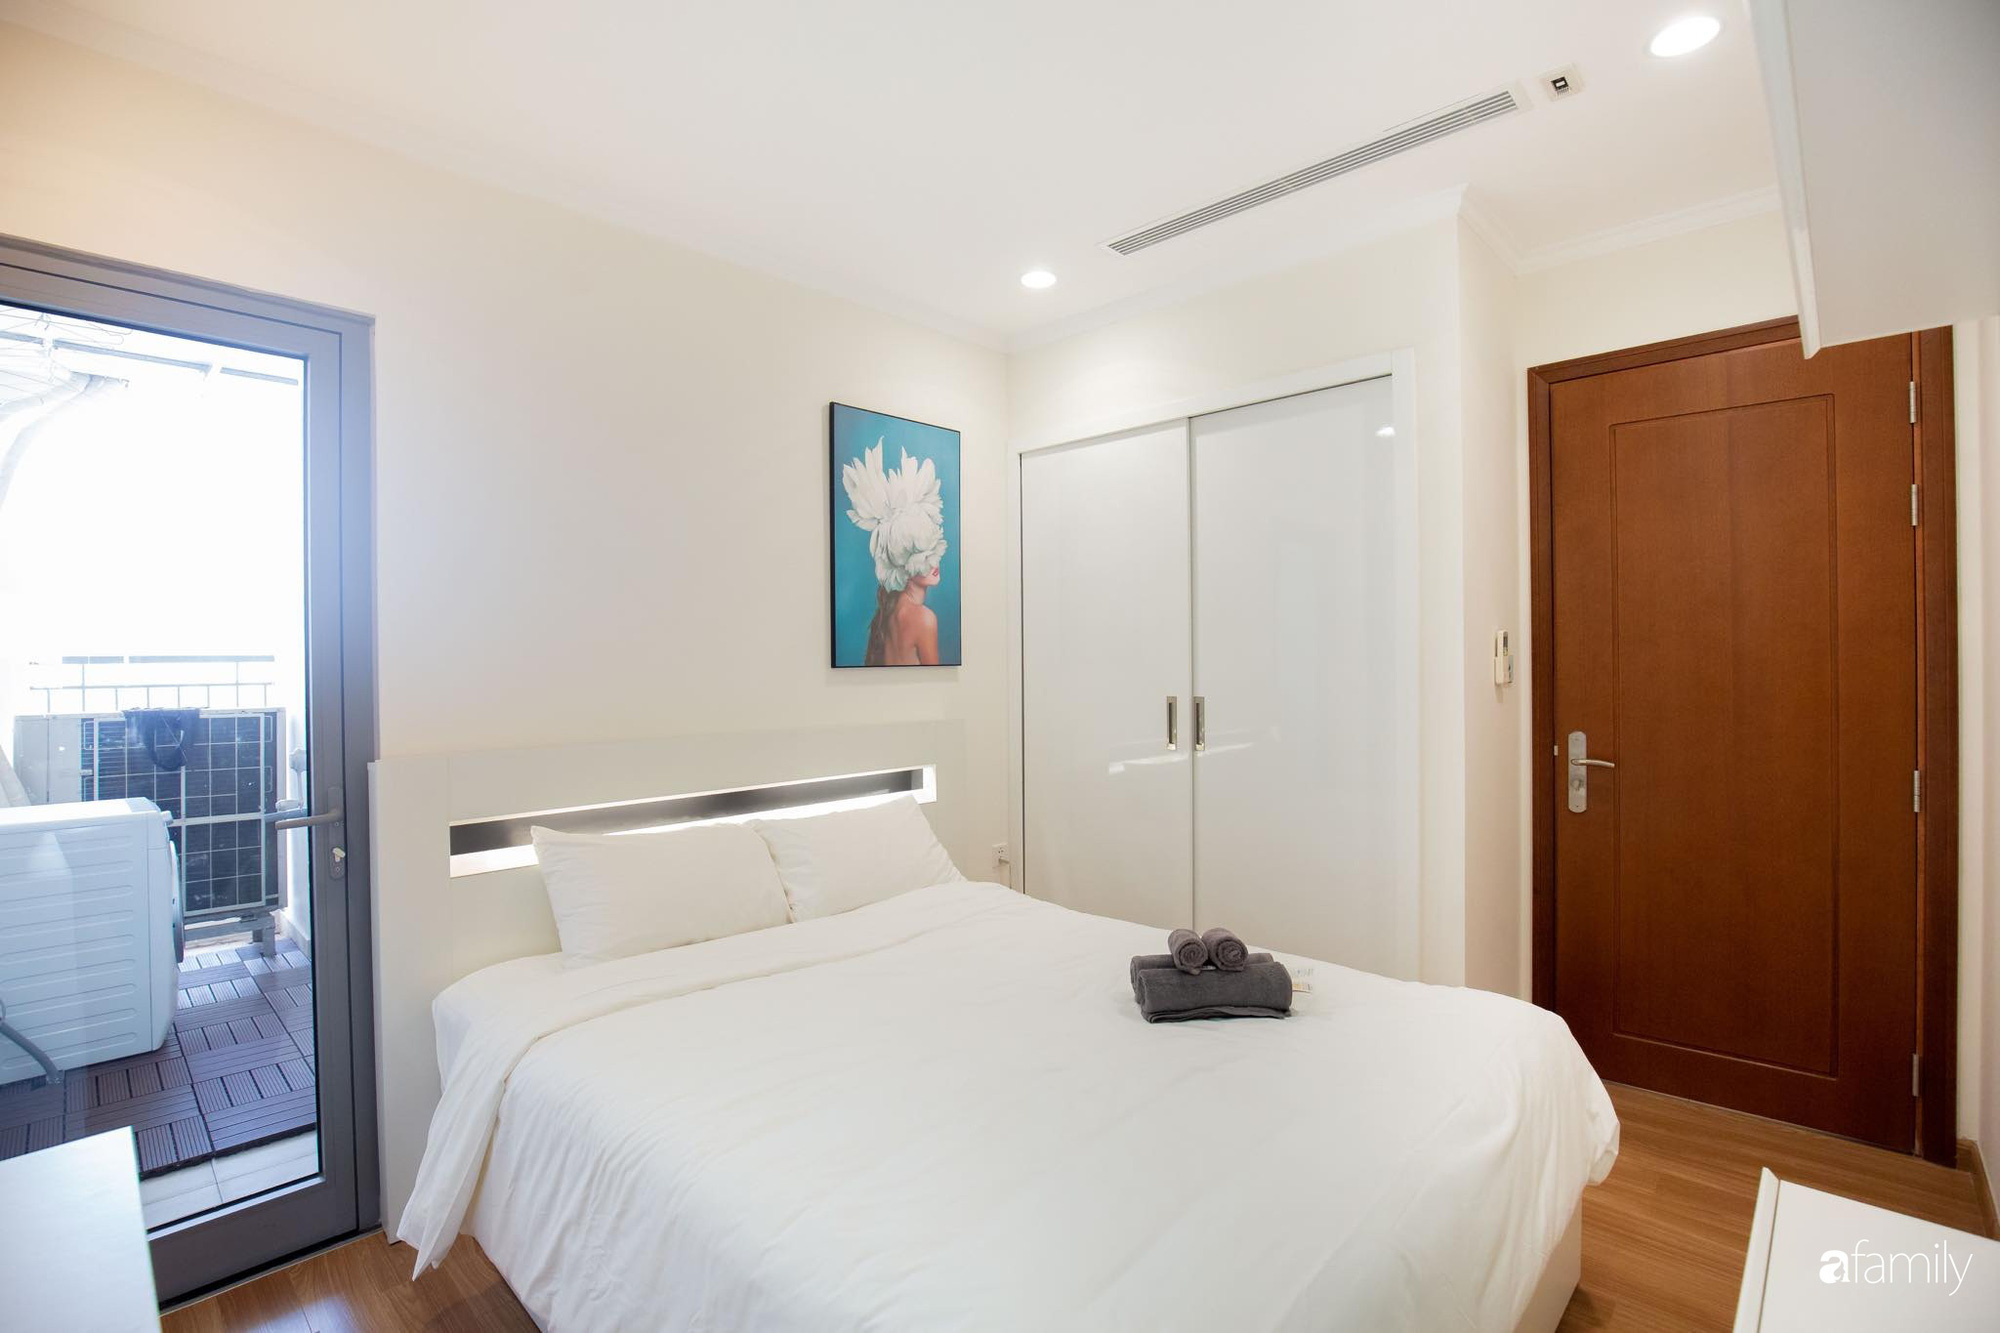  Phòng ngủ tiết kiệm tối đa diện tích nhờ cách thiết kế tủ âm tường cánh trượt màu trắng cùng tông màu chính.